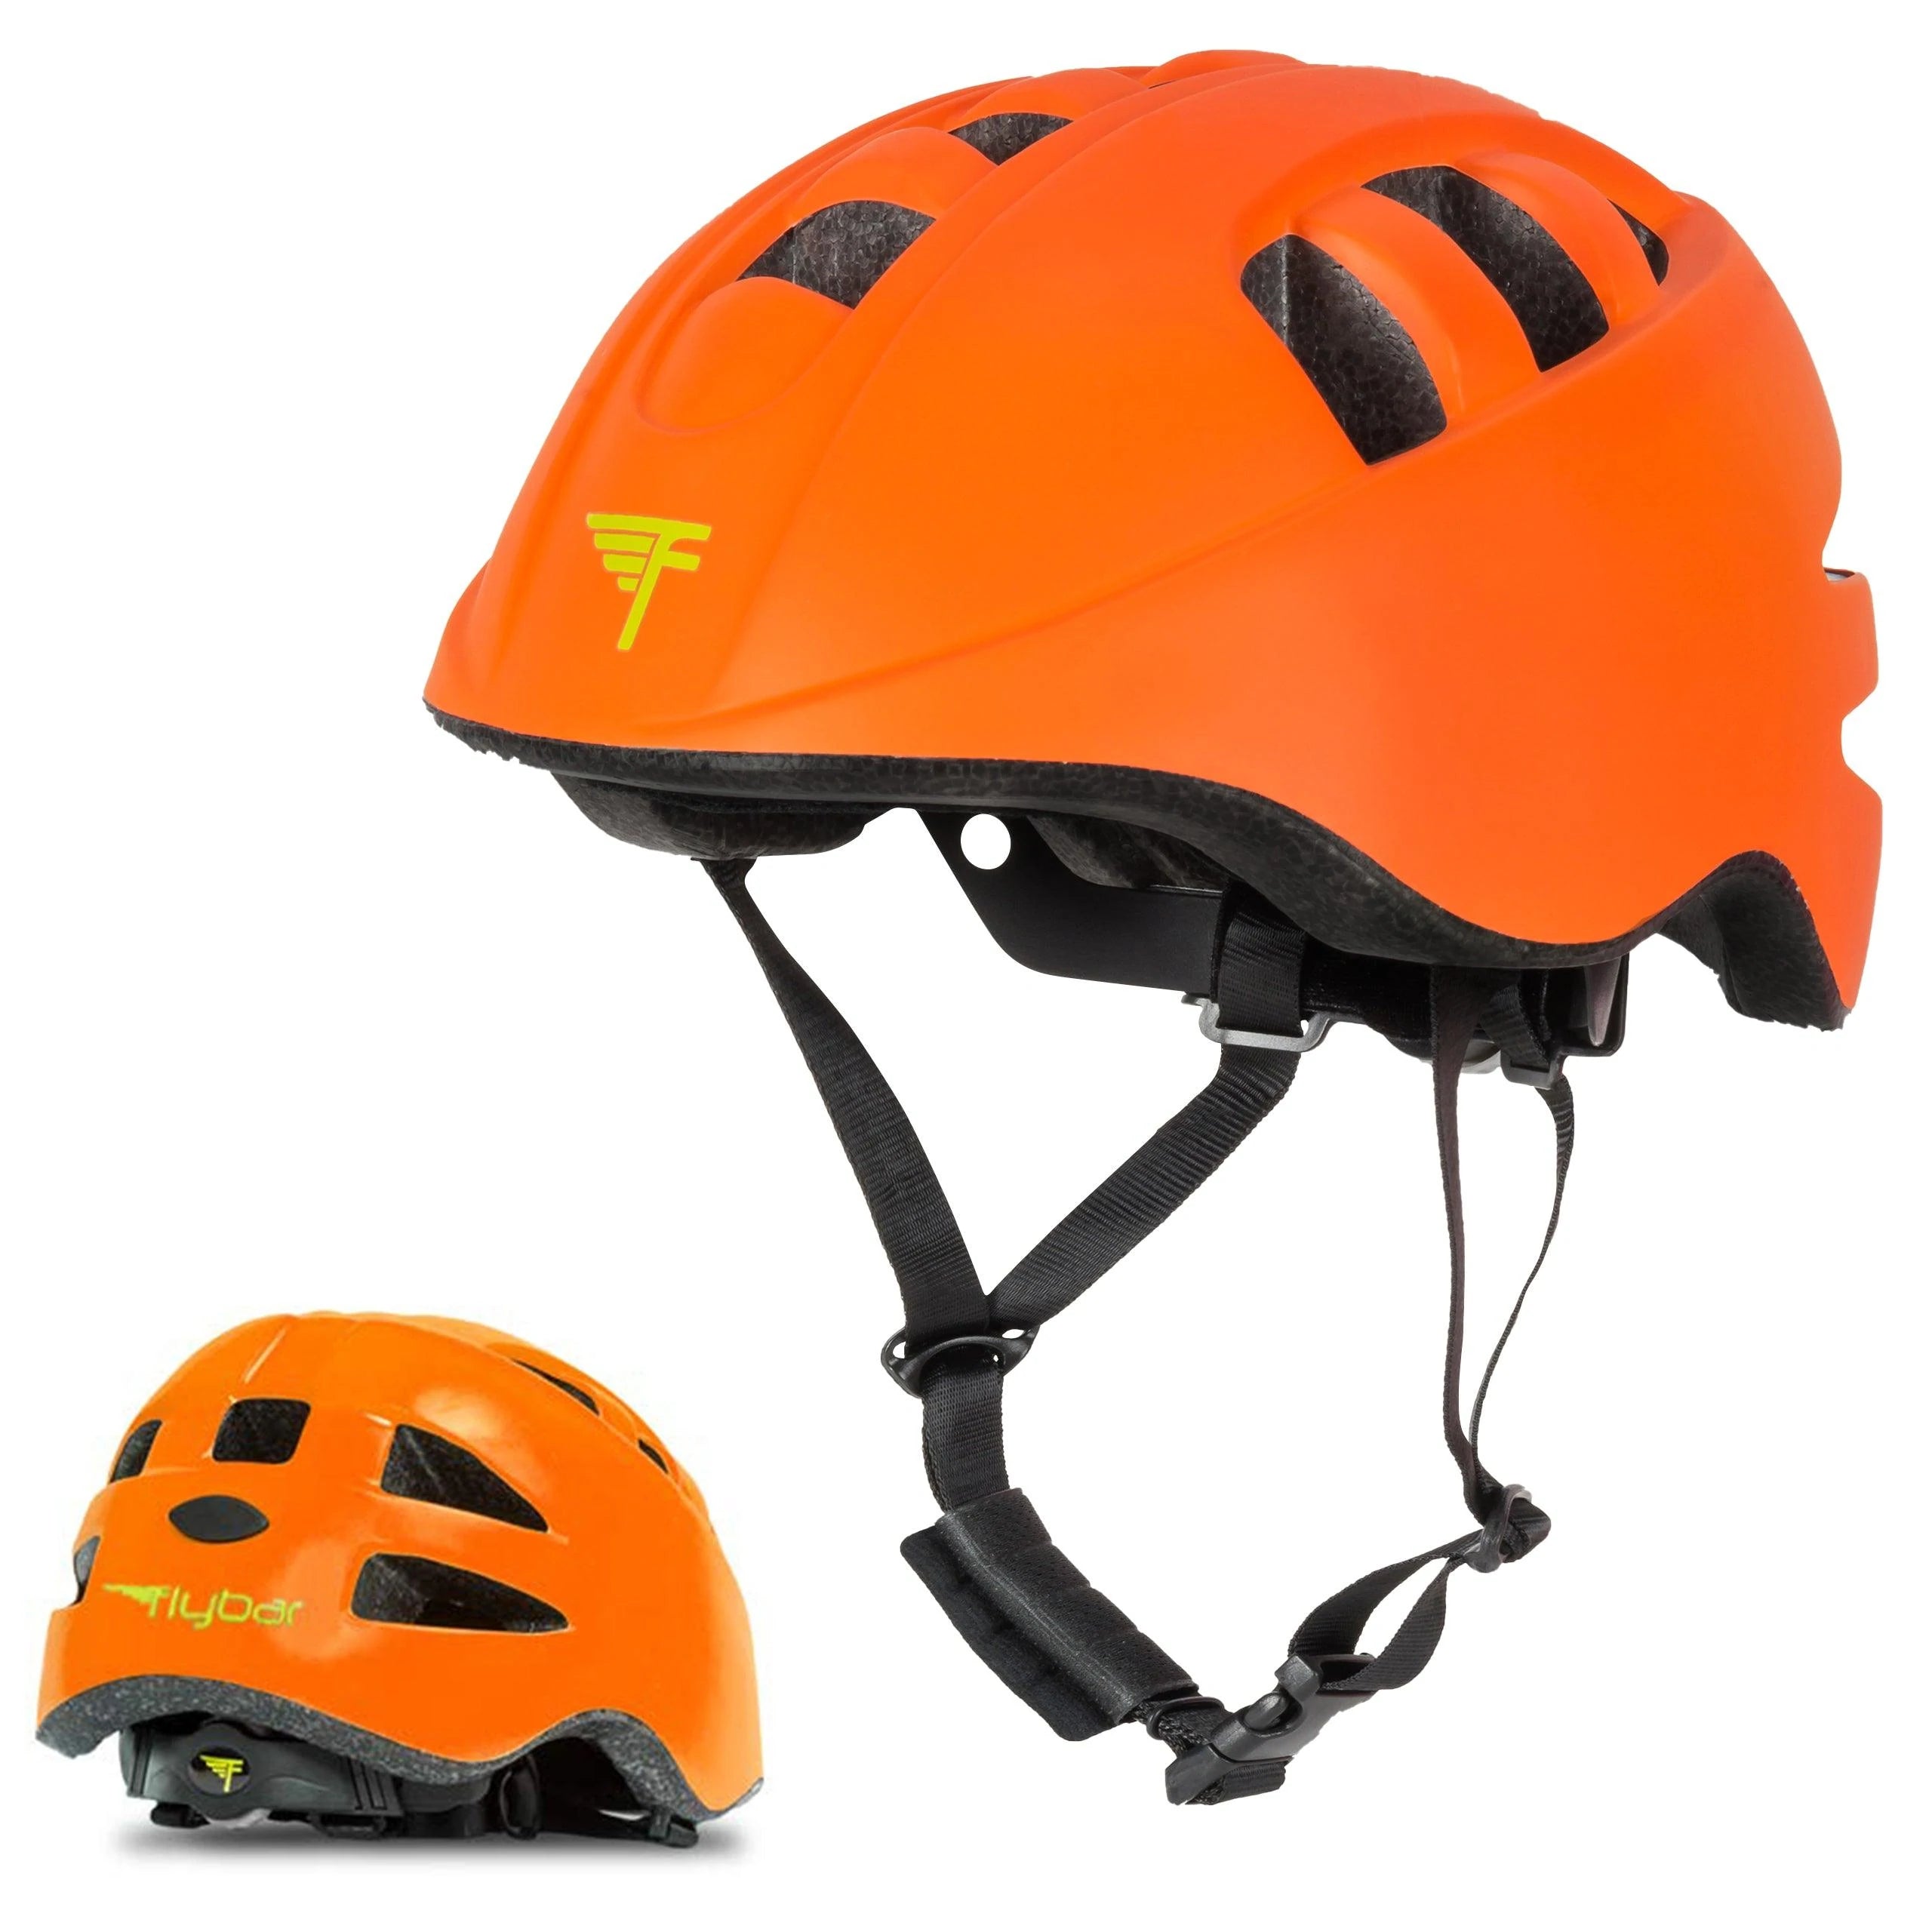 Kids Multi-Sport Helmets - Bike, Skateboard, & more!